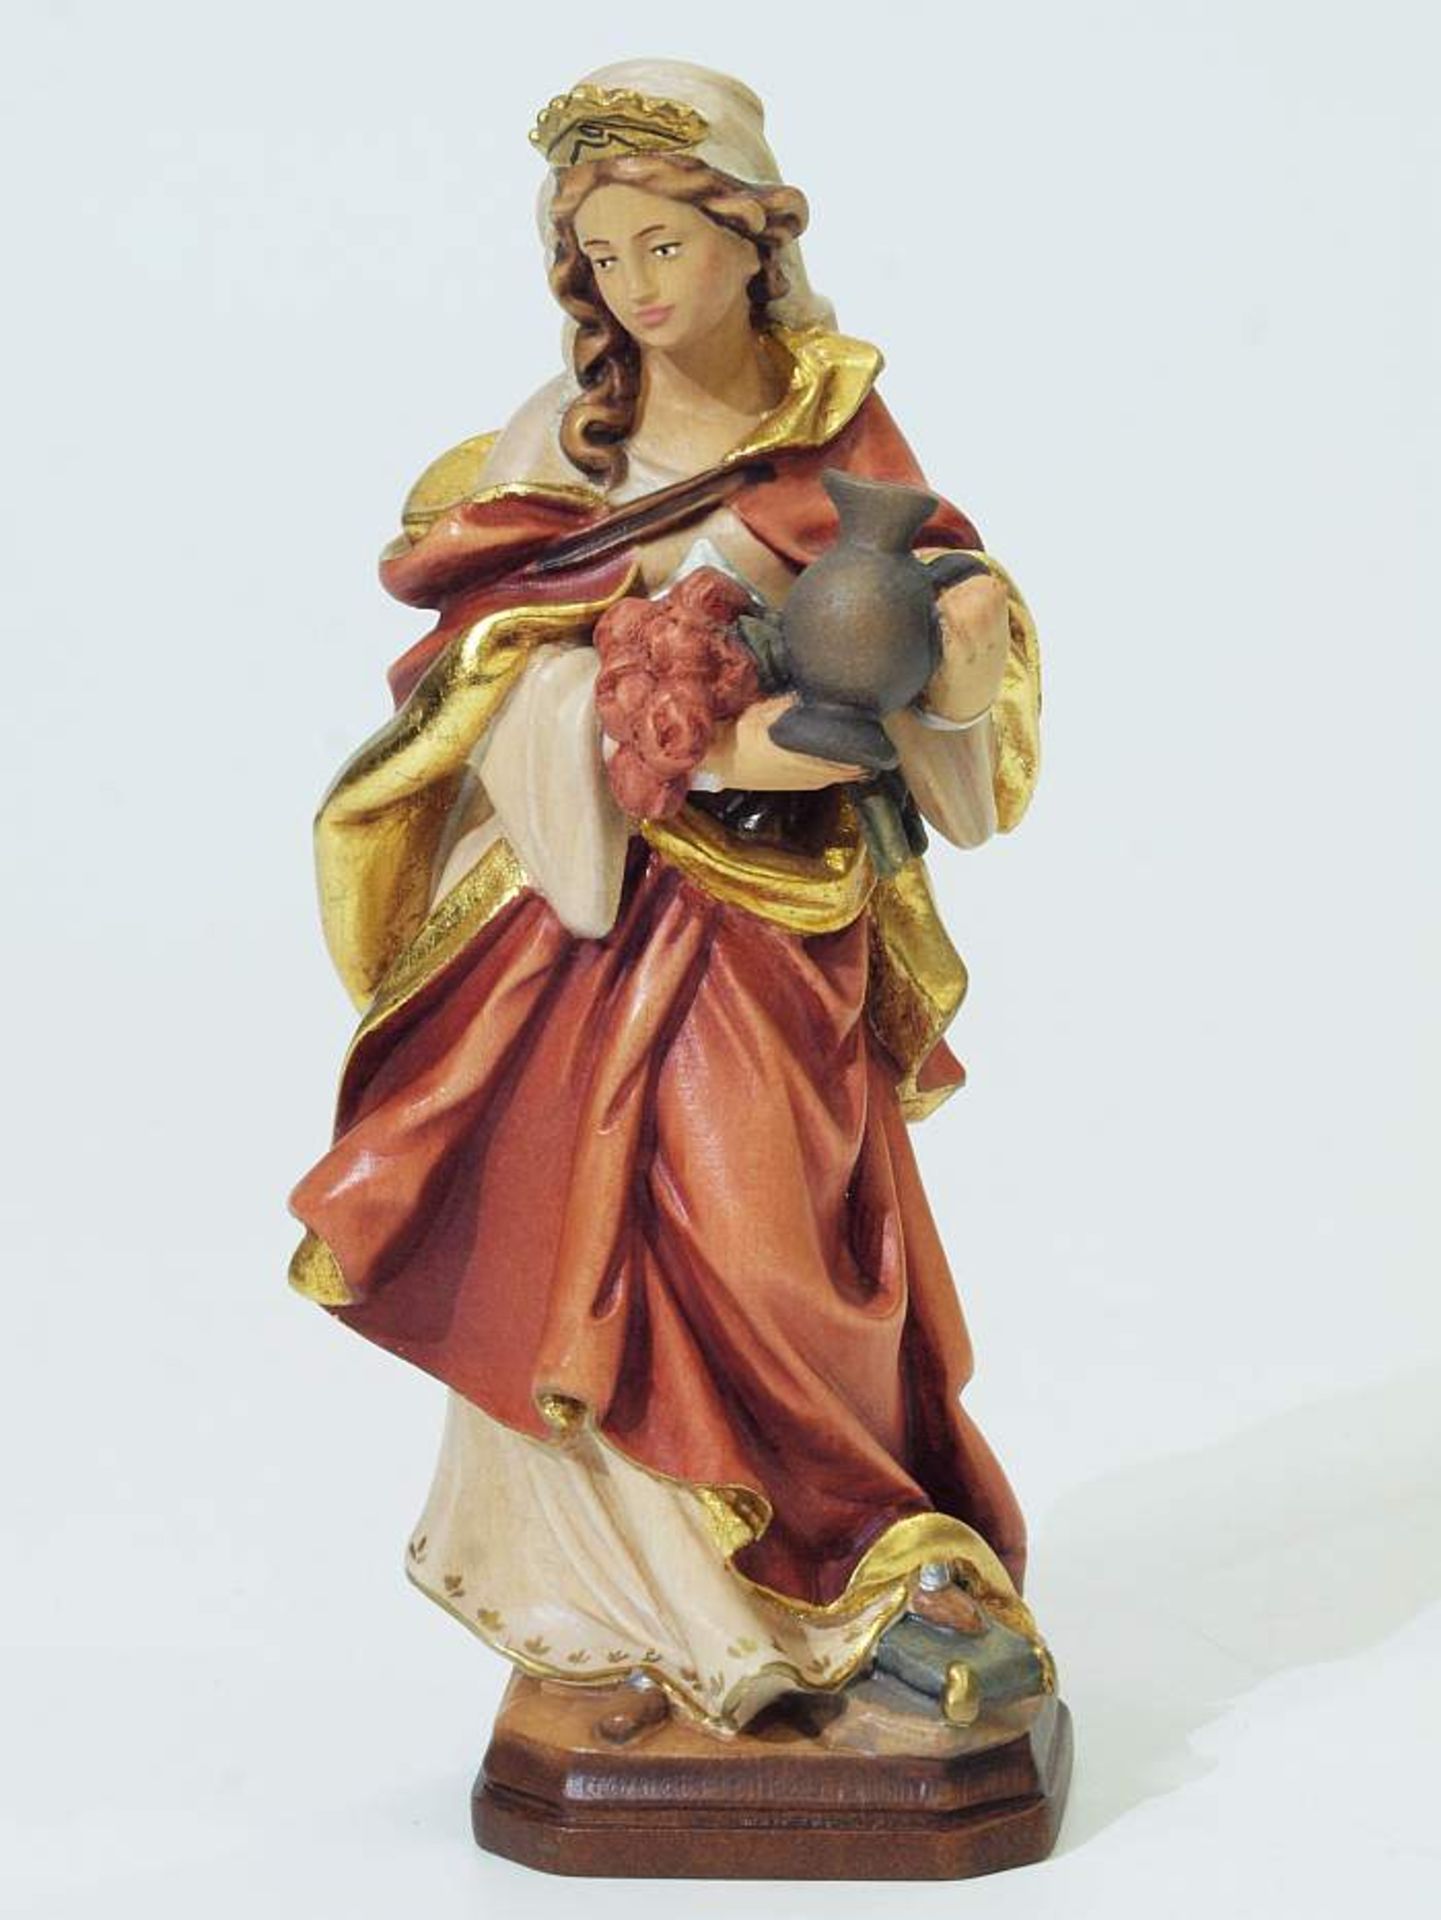 Heilige Elisabeth. Heilige Elisabeth. 20. Jahrhundert. Holz geschnitzt, farbig gefasst. Die junge